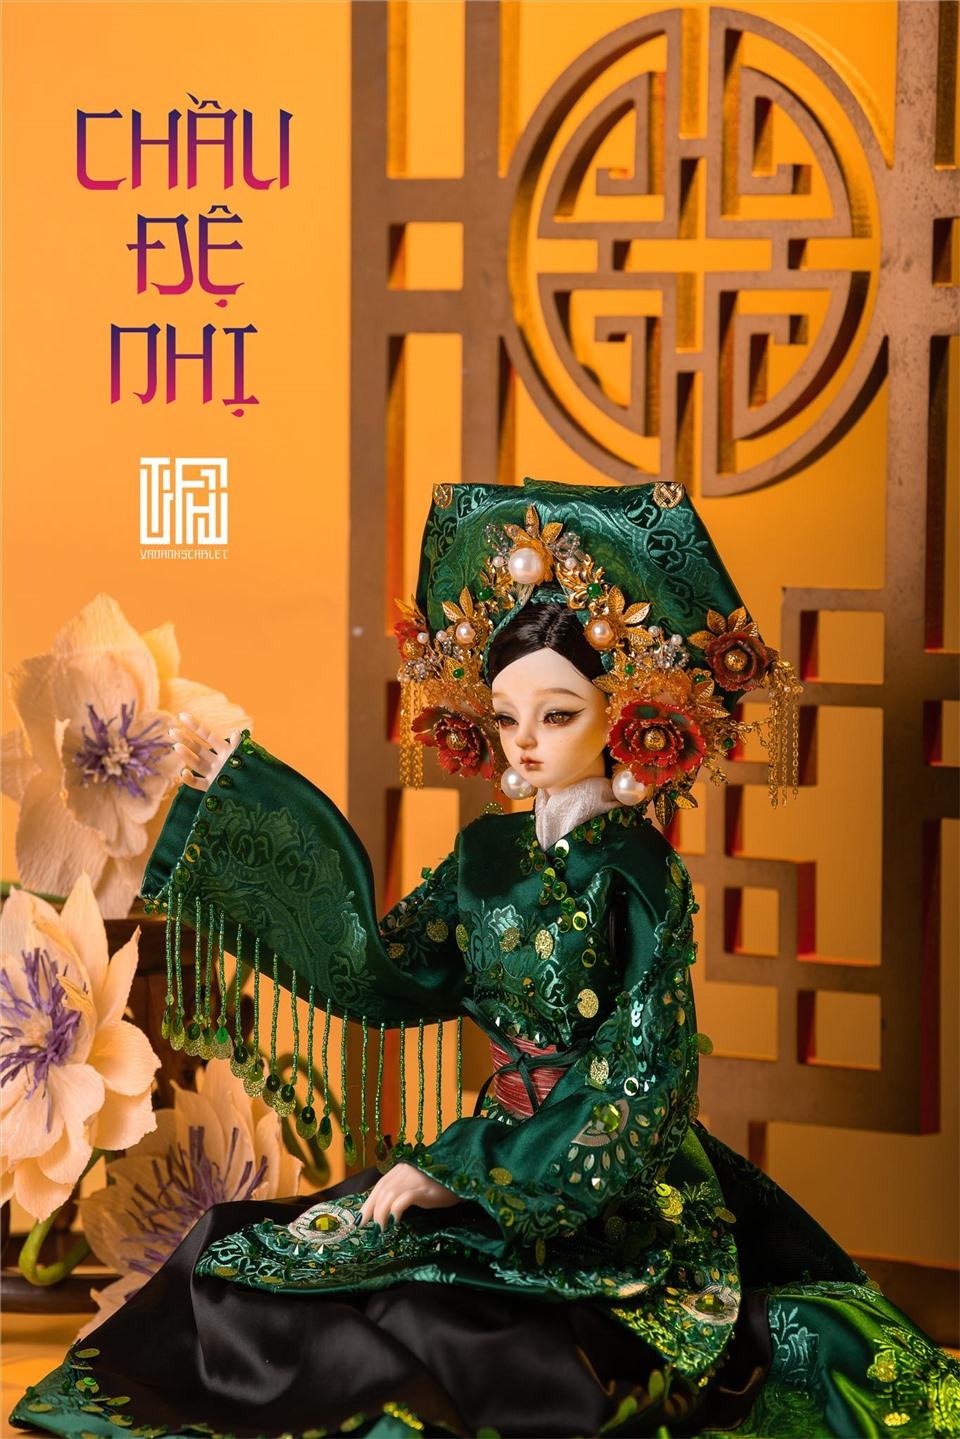 Nó không chỉ tạo nên một không gian tâm linh huyền bí mà còn thể hiện được nét uy nghi, sang trọng, cũng như niềm hân hoan và vẻ đẹp hồn nhiên, trong sáng của người Việt trong một thế giới văn hóa tâm linh và tín ngưỡng.